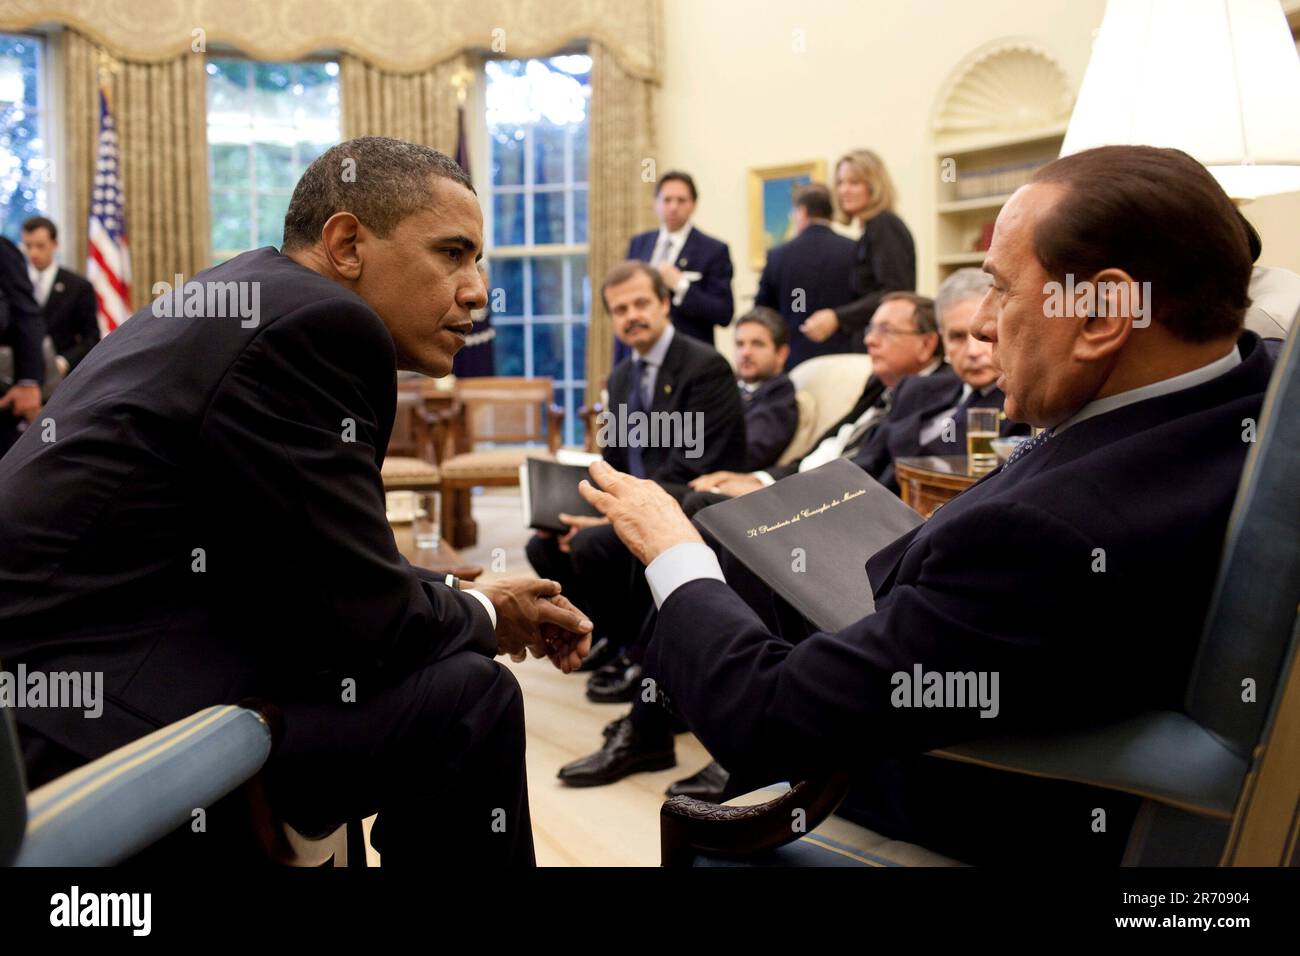 Washington, DC - 15. Juni 2009 -- US-Präsident Barack Obama trifft sich mit dem italienischen Premierminister Silvio Berlusconi im Oval Office des Weißen Hauses am 15. Juni 2009. Erforderliches Guthaben: Pete Souza - Weißes Haus über CNP Stockfoto